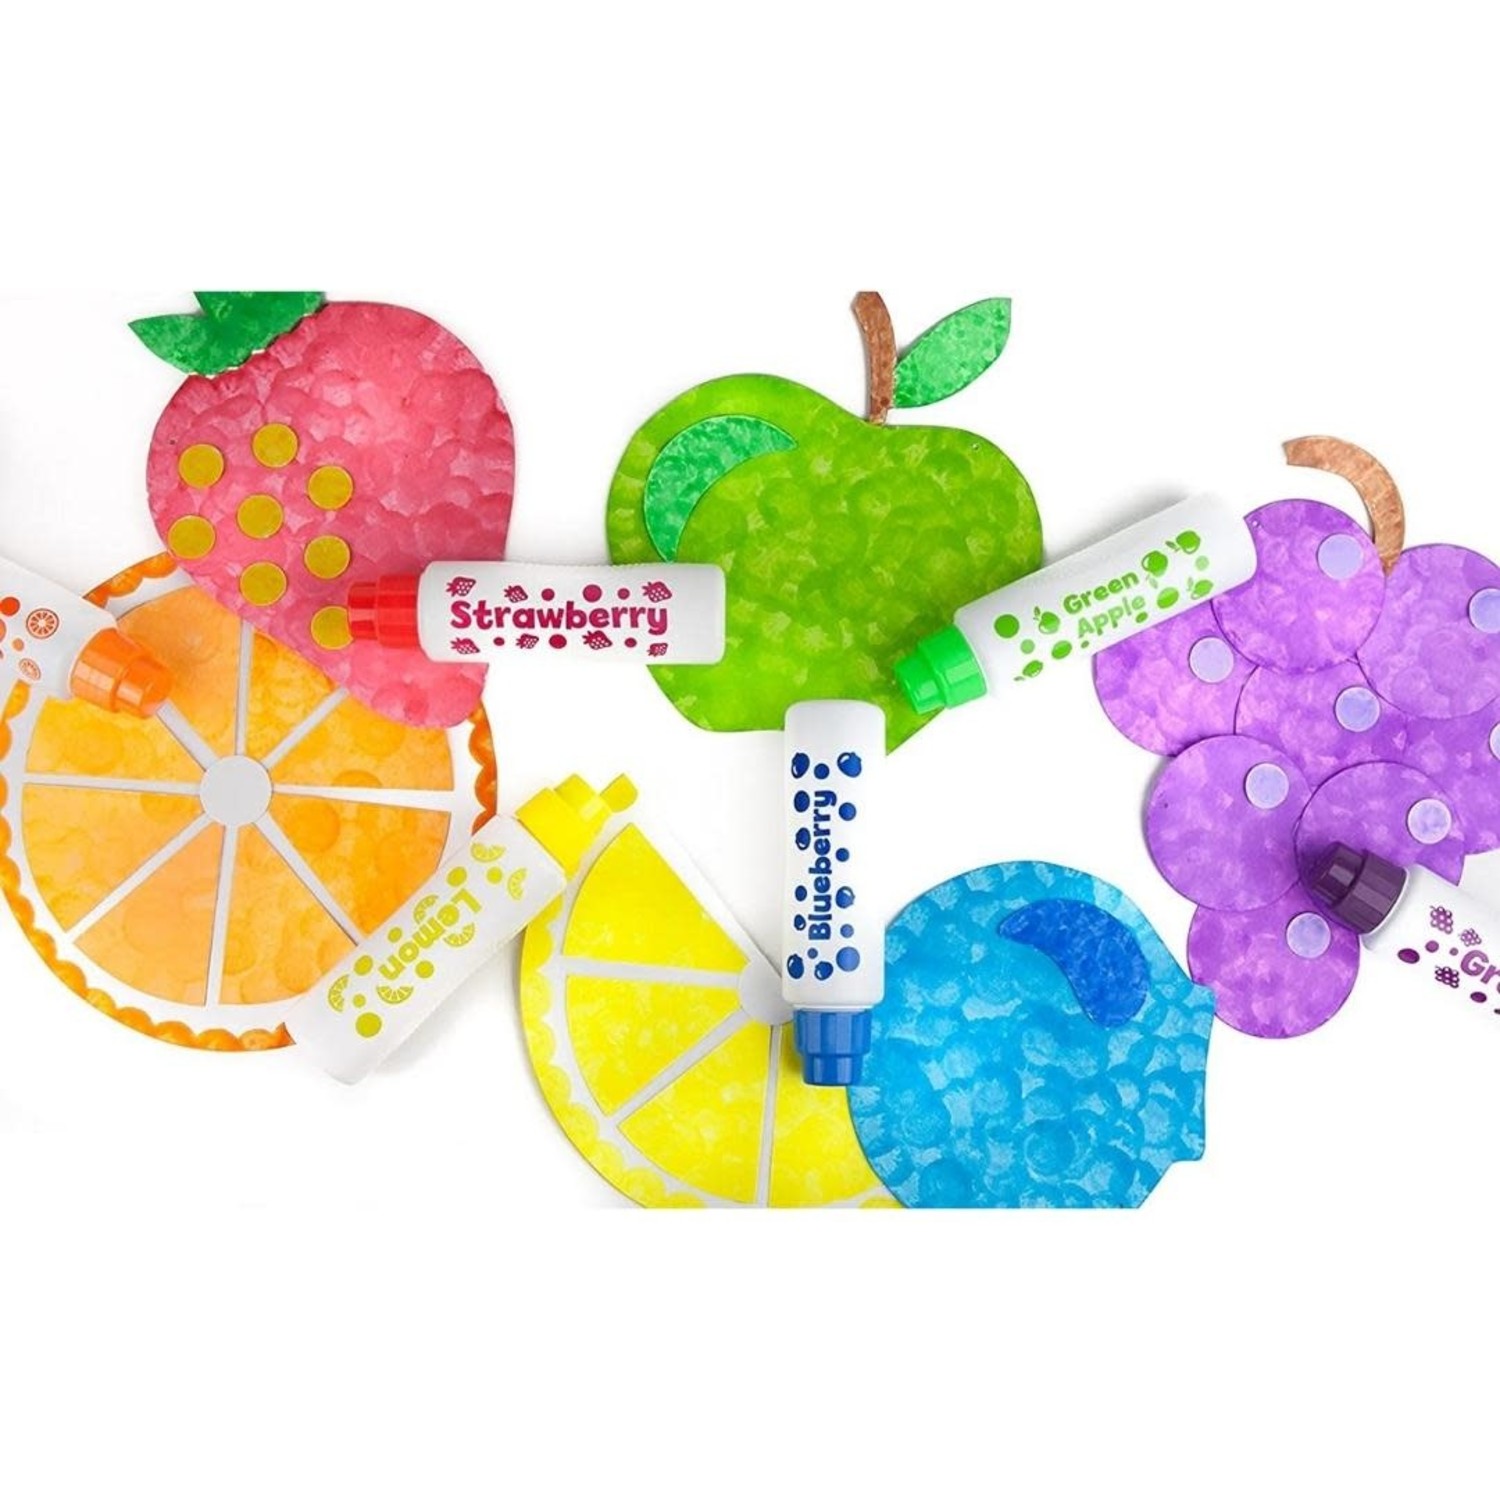 https://cdn.shoplightspeed.com/shops/653480/files/42010513/1500x4000x3/do-a-dot-do-a-dot-juicy-fruits-scented-6-pack.jpg